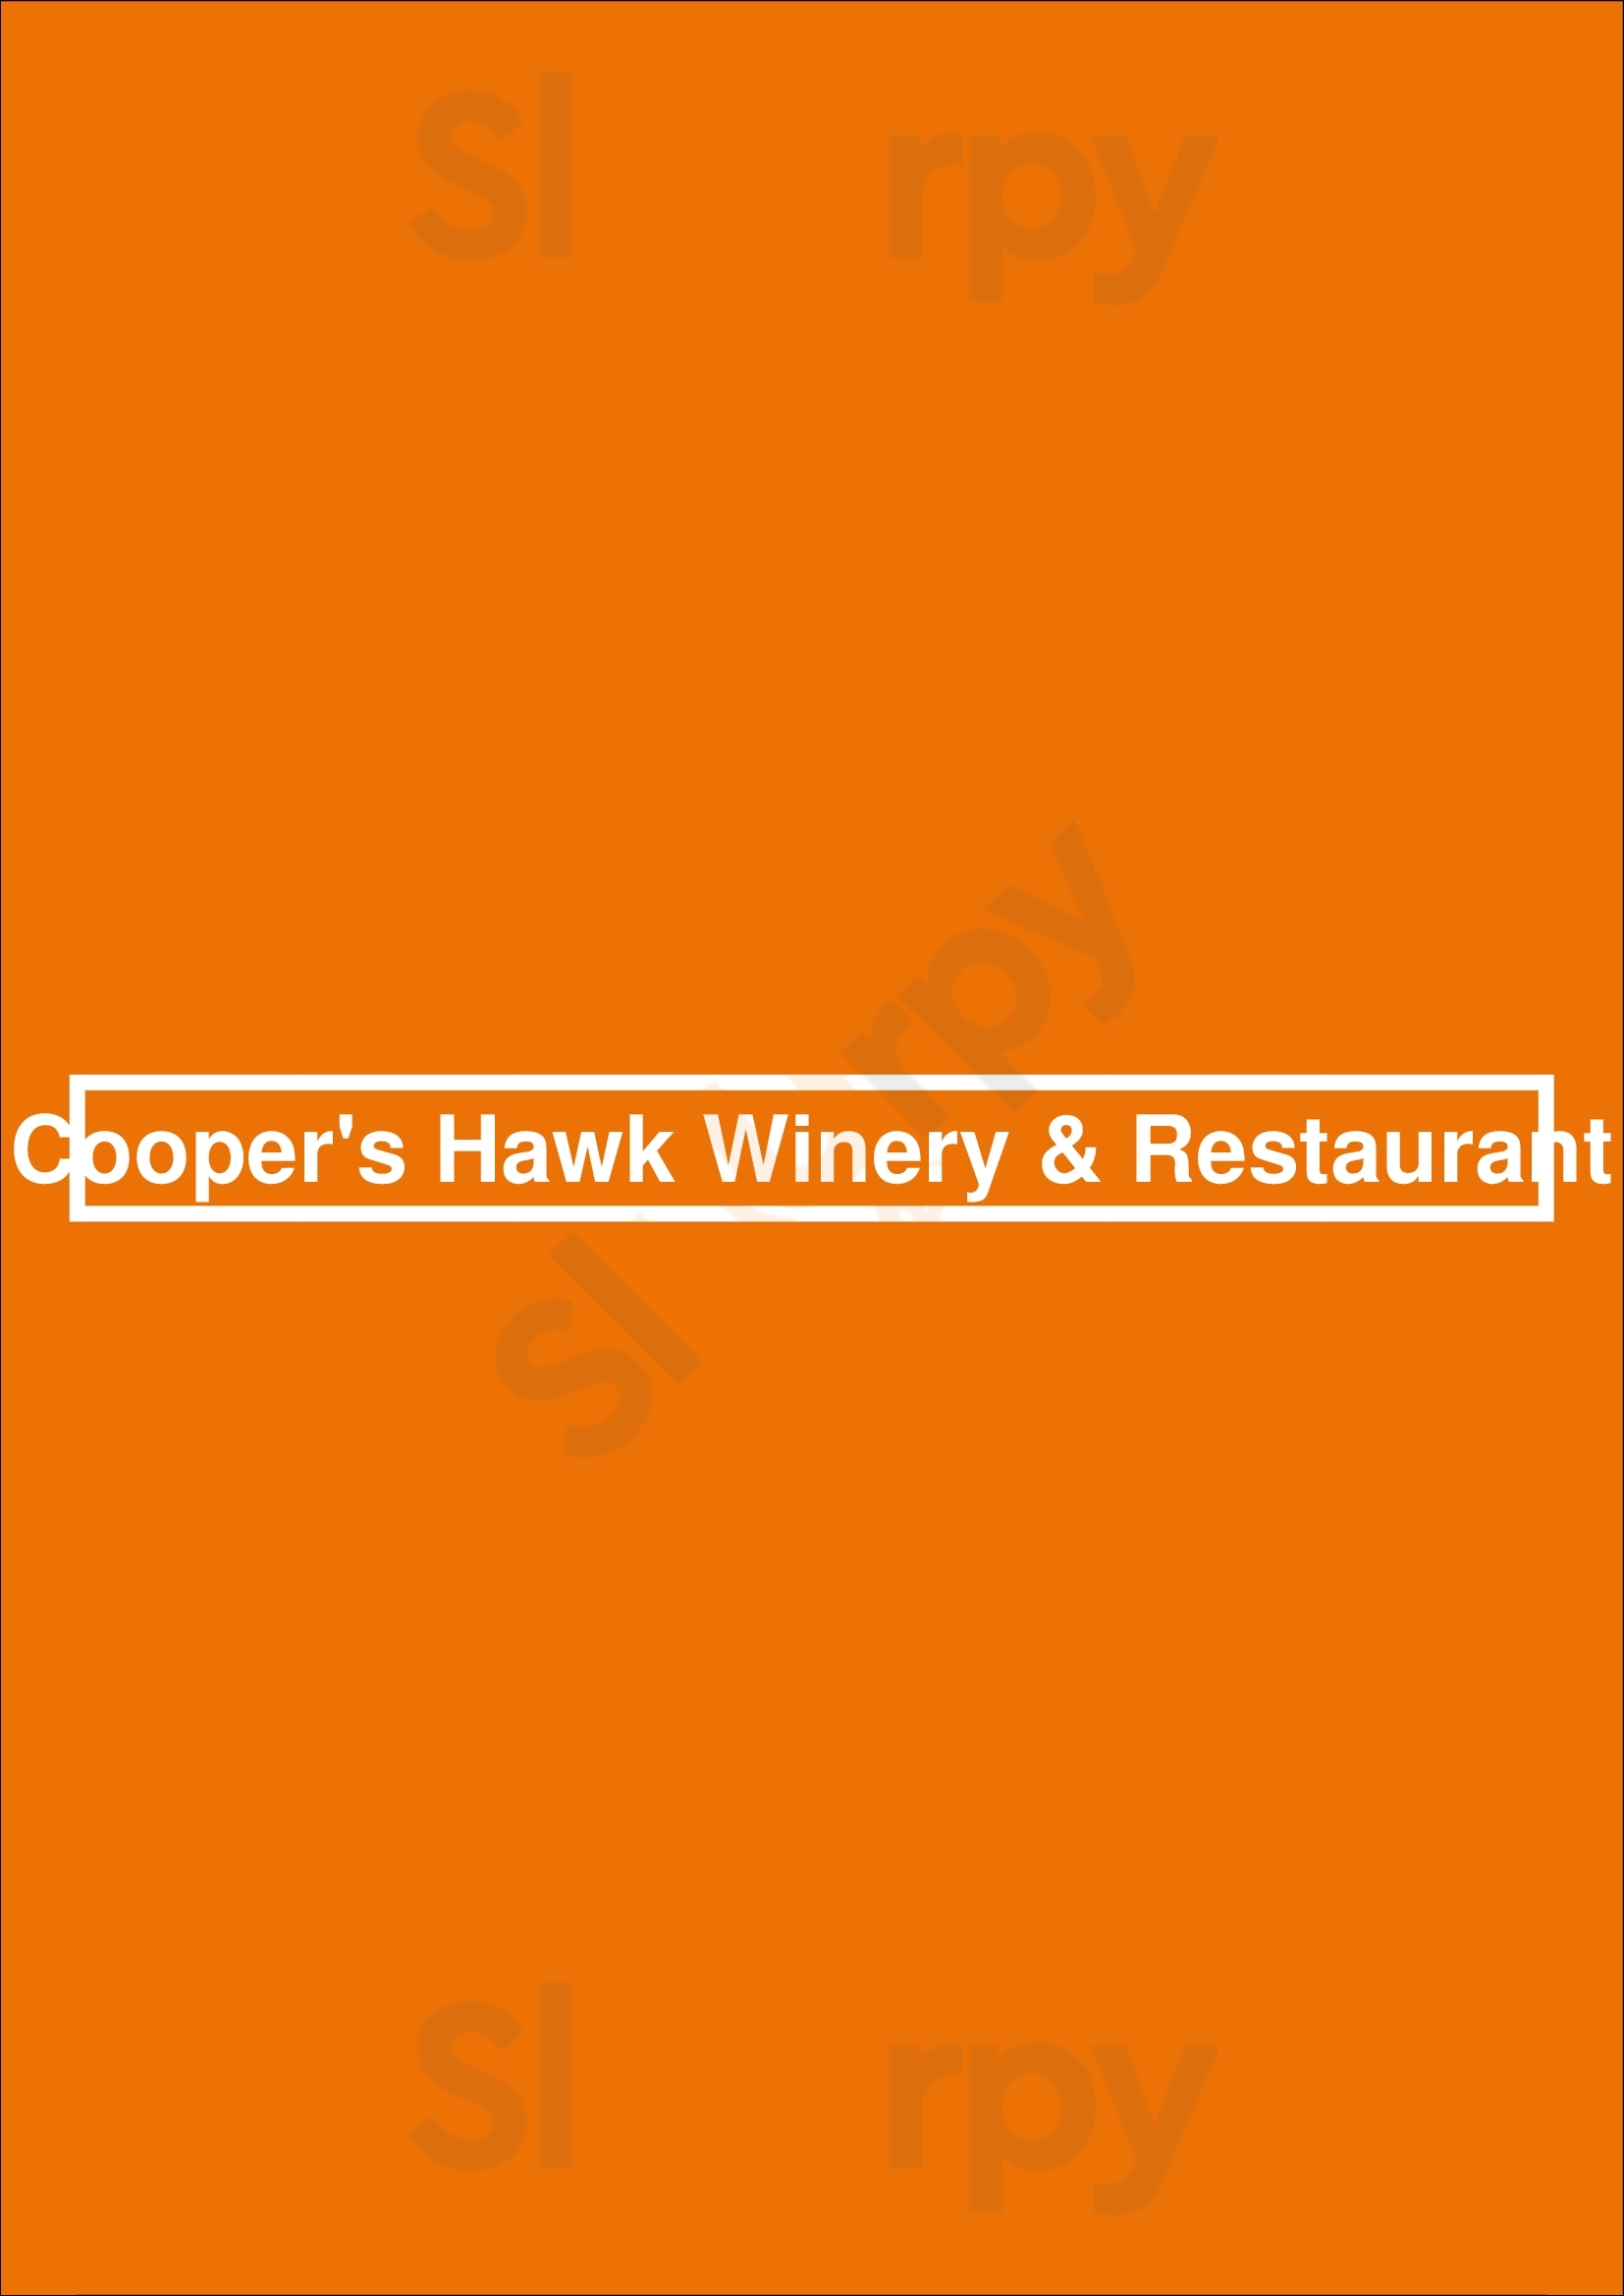 Cooper's Hawk Winery & Restaurant- Tampa Tampa Menu - 1